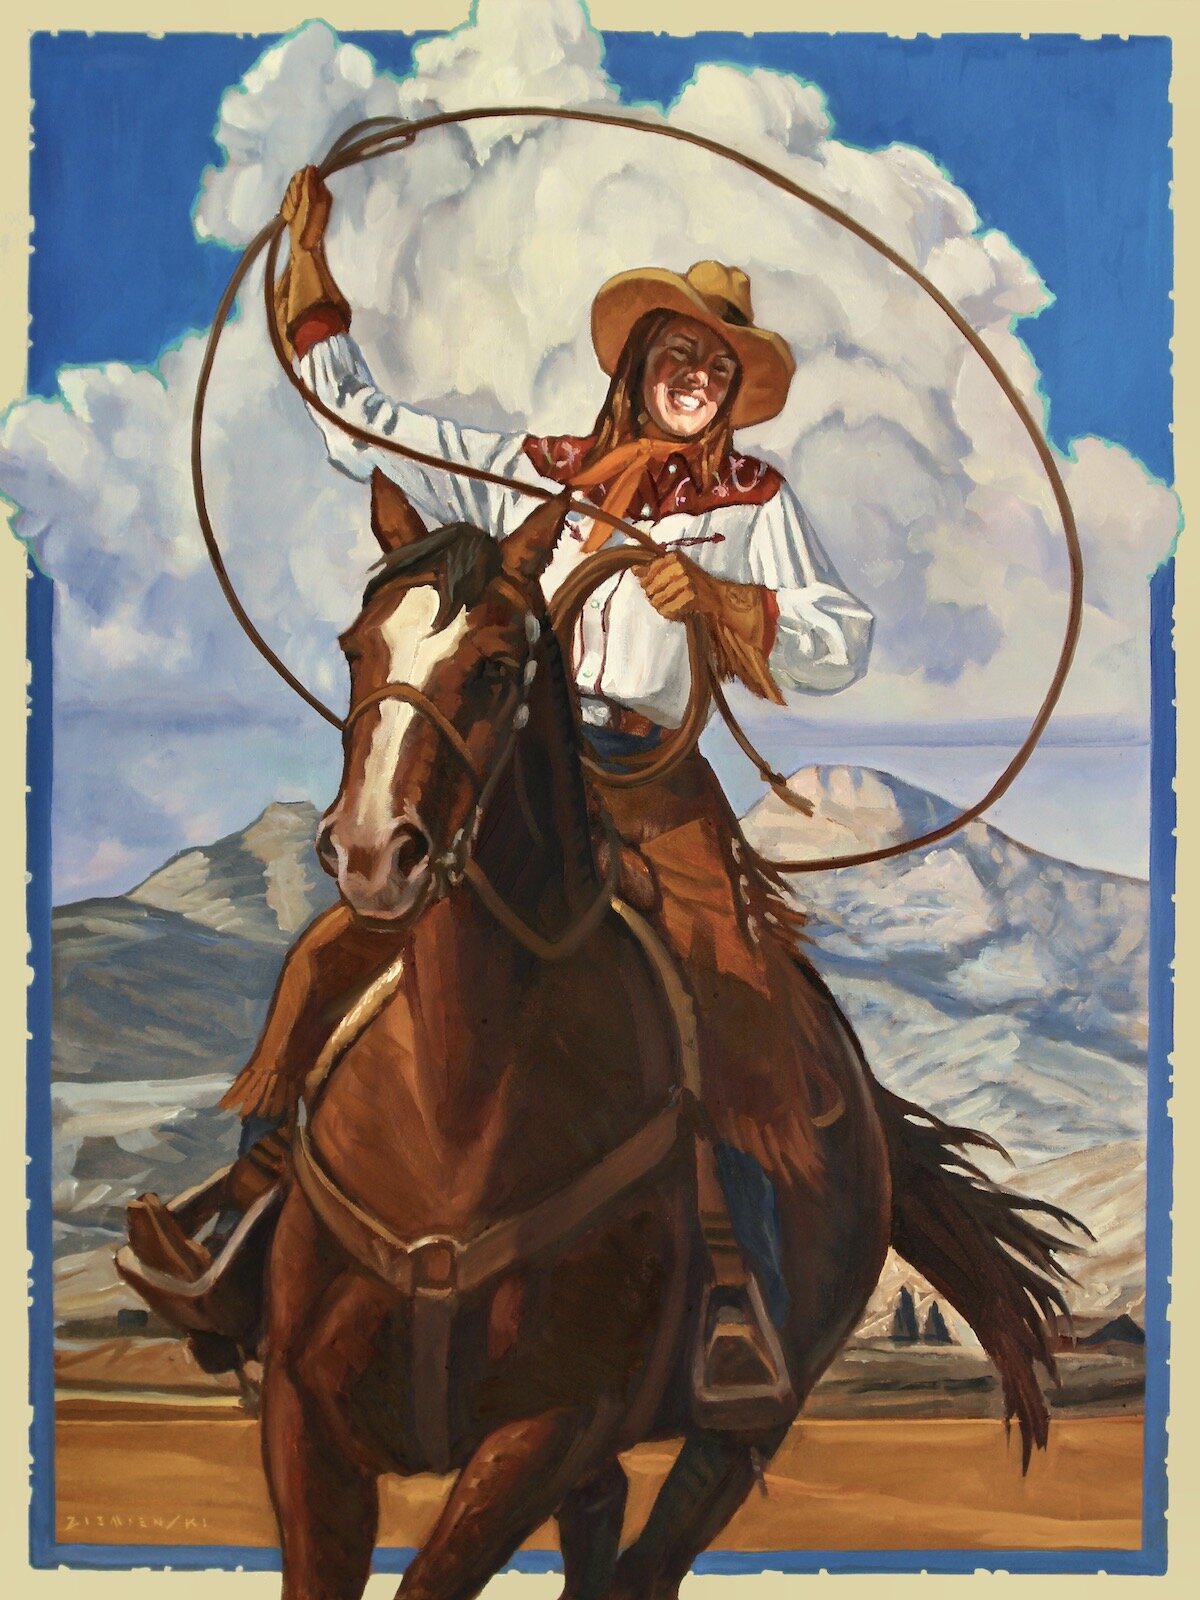 Cowgirl's Rope Trick by Dennis Ziemienski